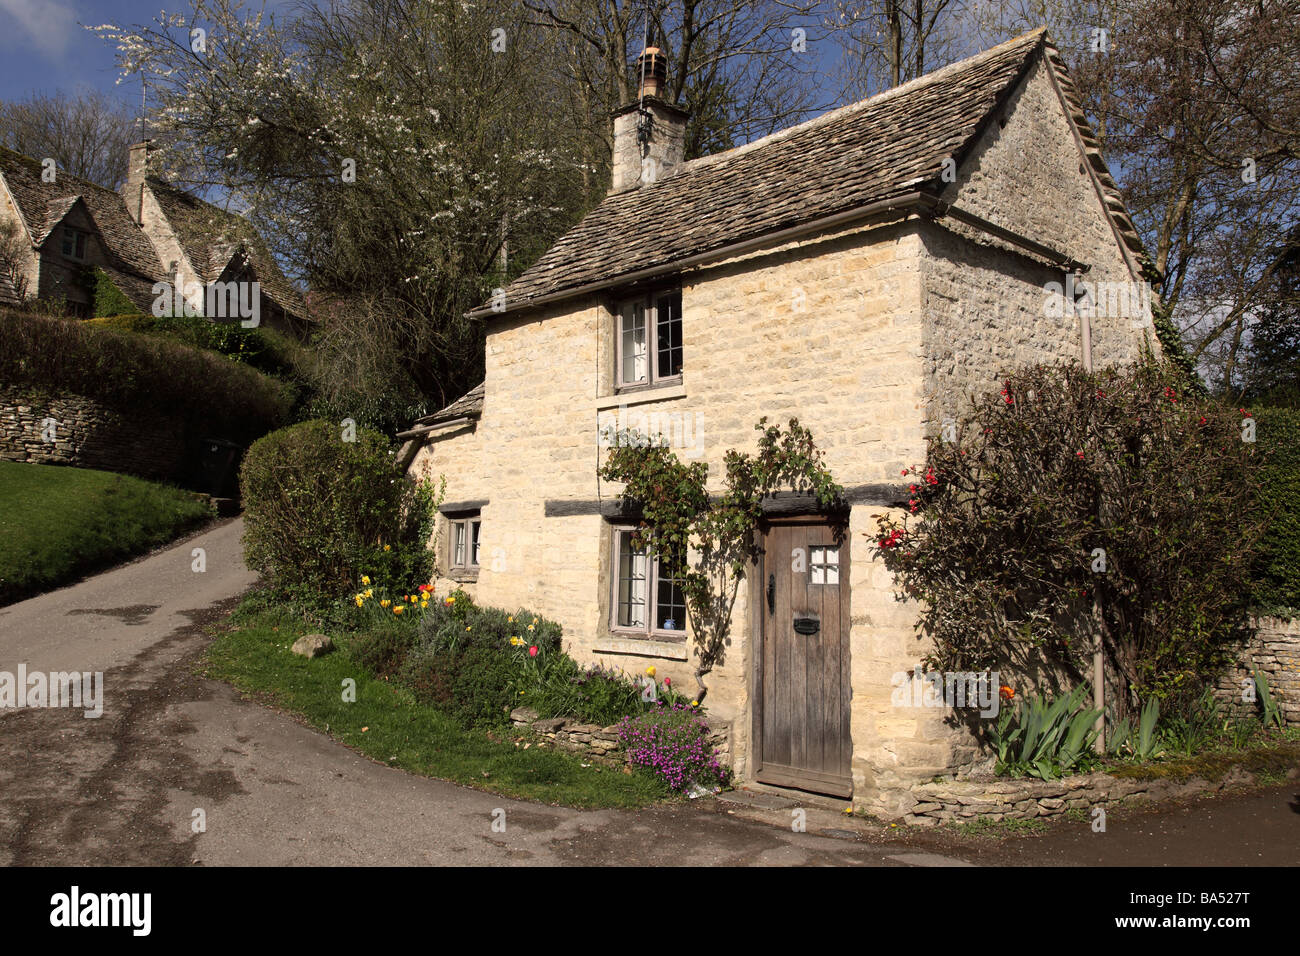 Stone Cottage, Arlington Row, Bibury, Cotswold, Gloucestershire, England, UK Stock Photo